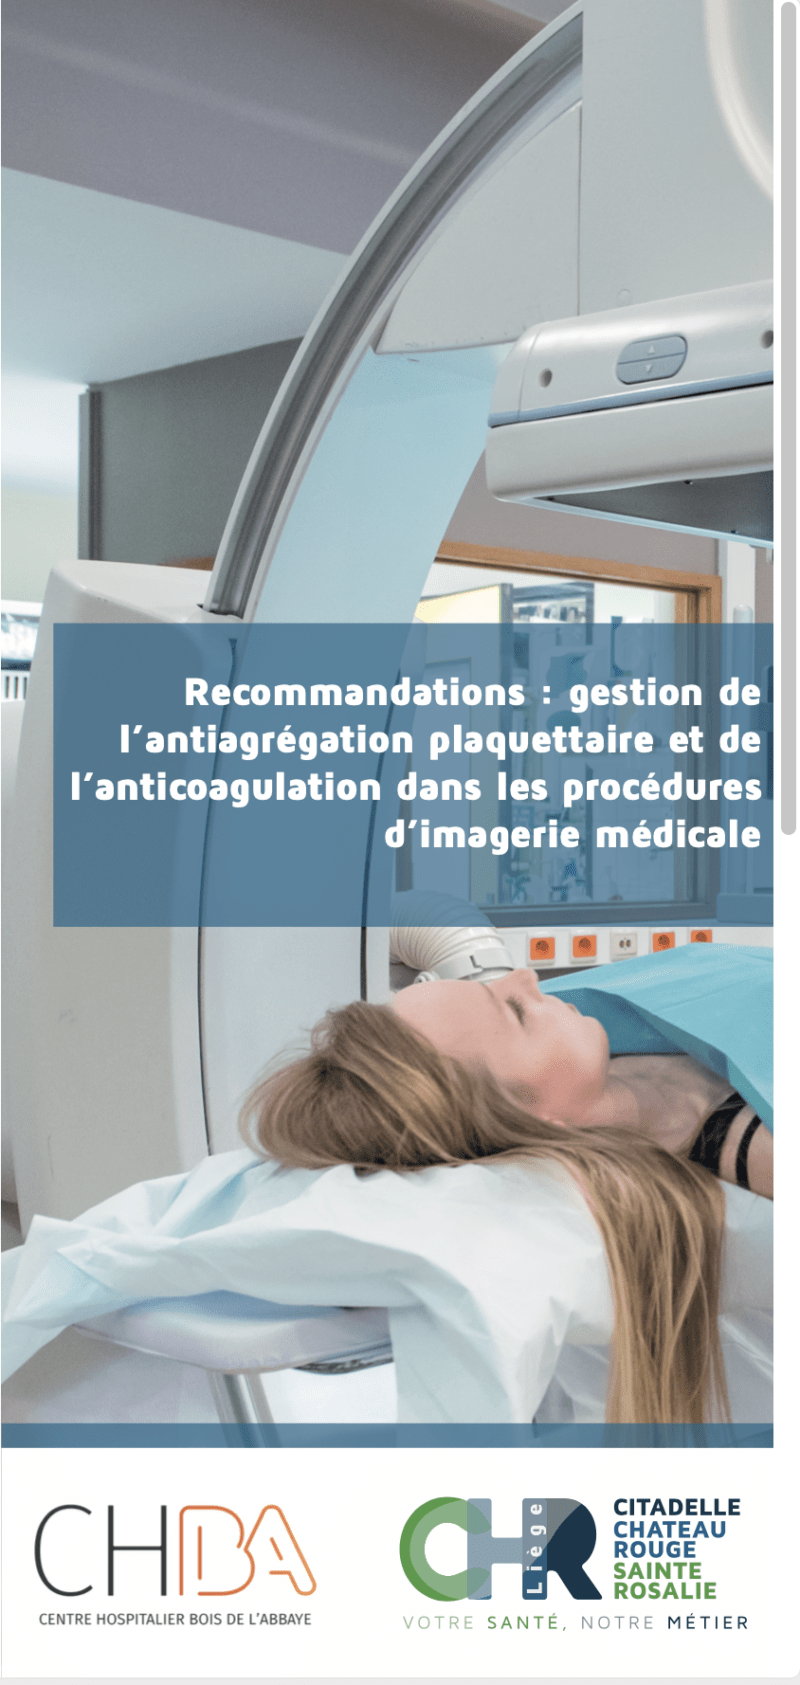 Imagerie médicale / Recommandations : gestion de l'antiagrégation plaquettaire et de l'anticoagulation dans les procédures d'imagerie médicale